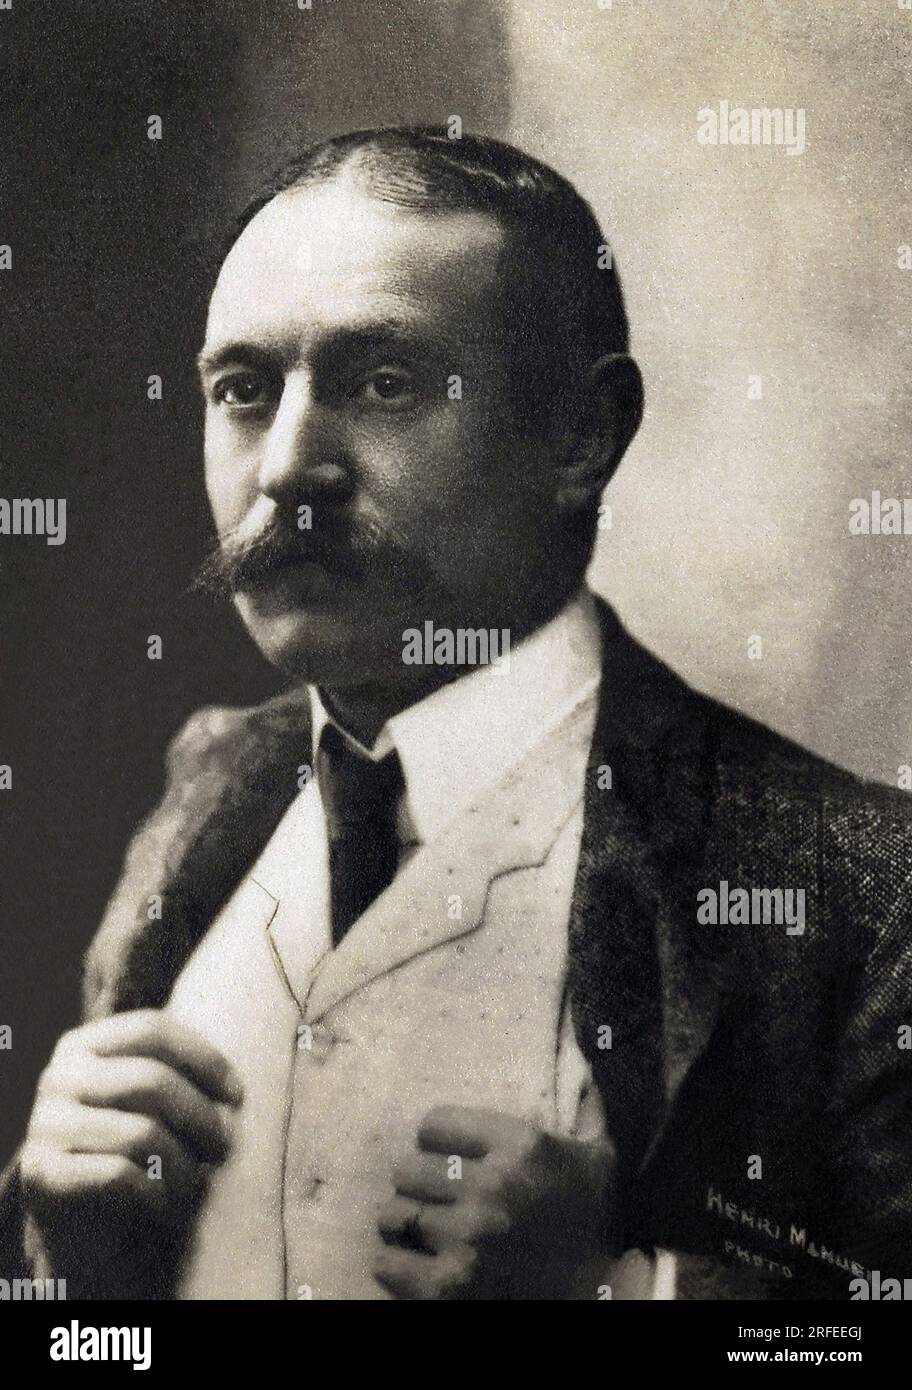 Portrait de Firmin Gemier (1869-1933), acteur, metteur en scene et directeur de theatre francais. Photographie, debut du 20e siecle. Stock Photo